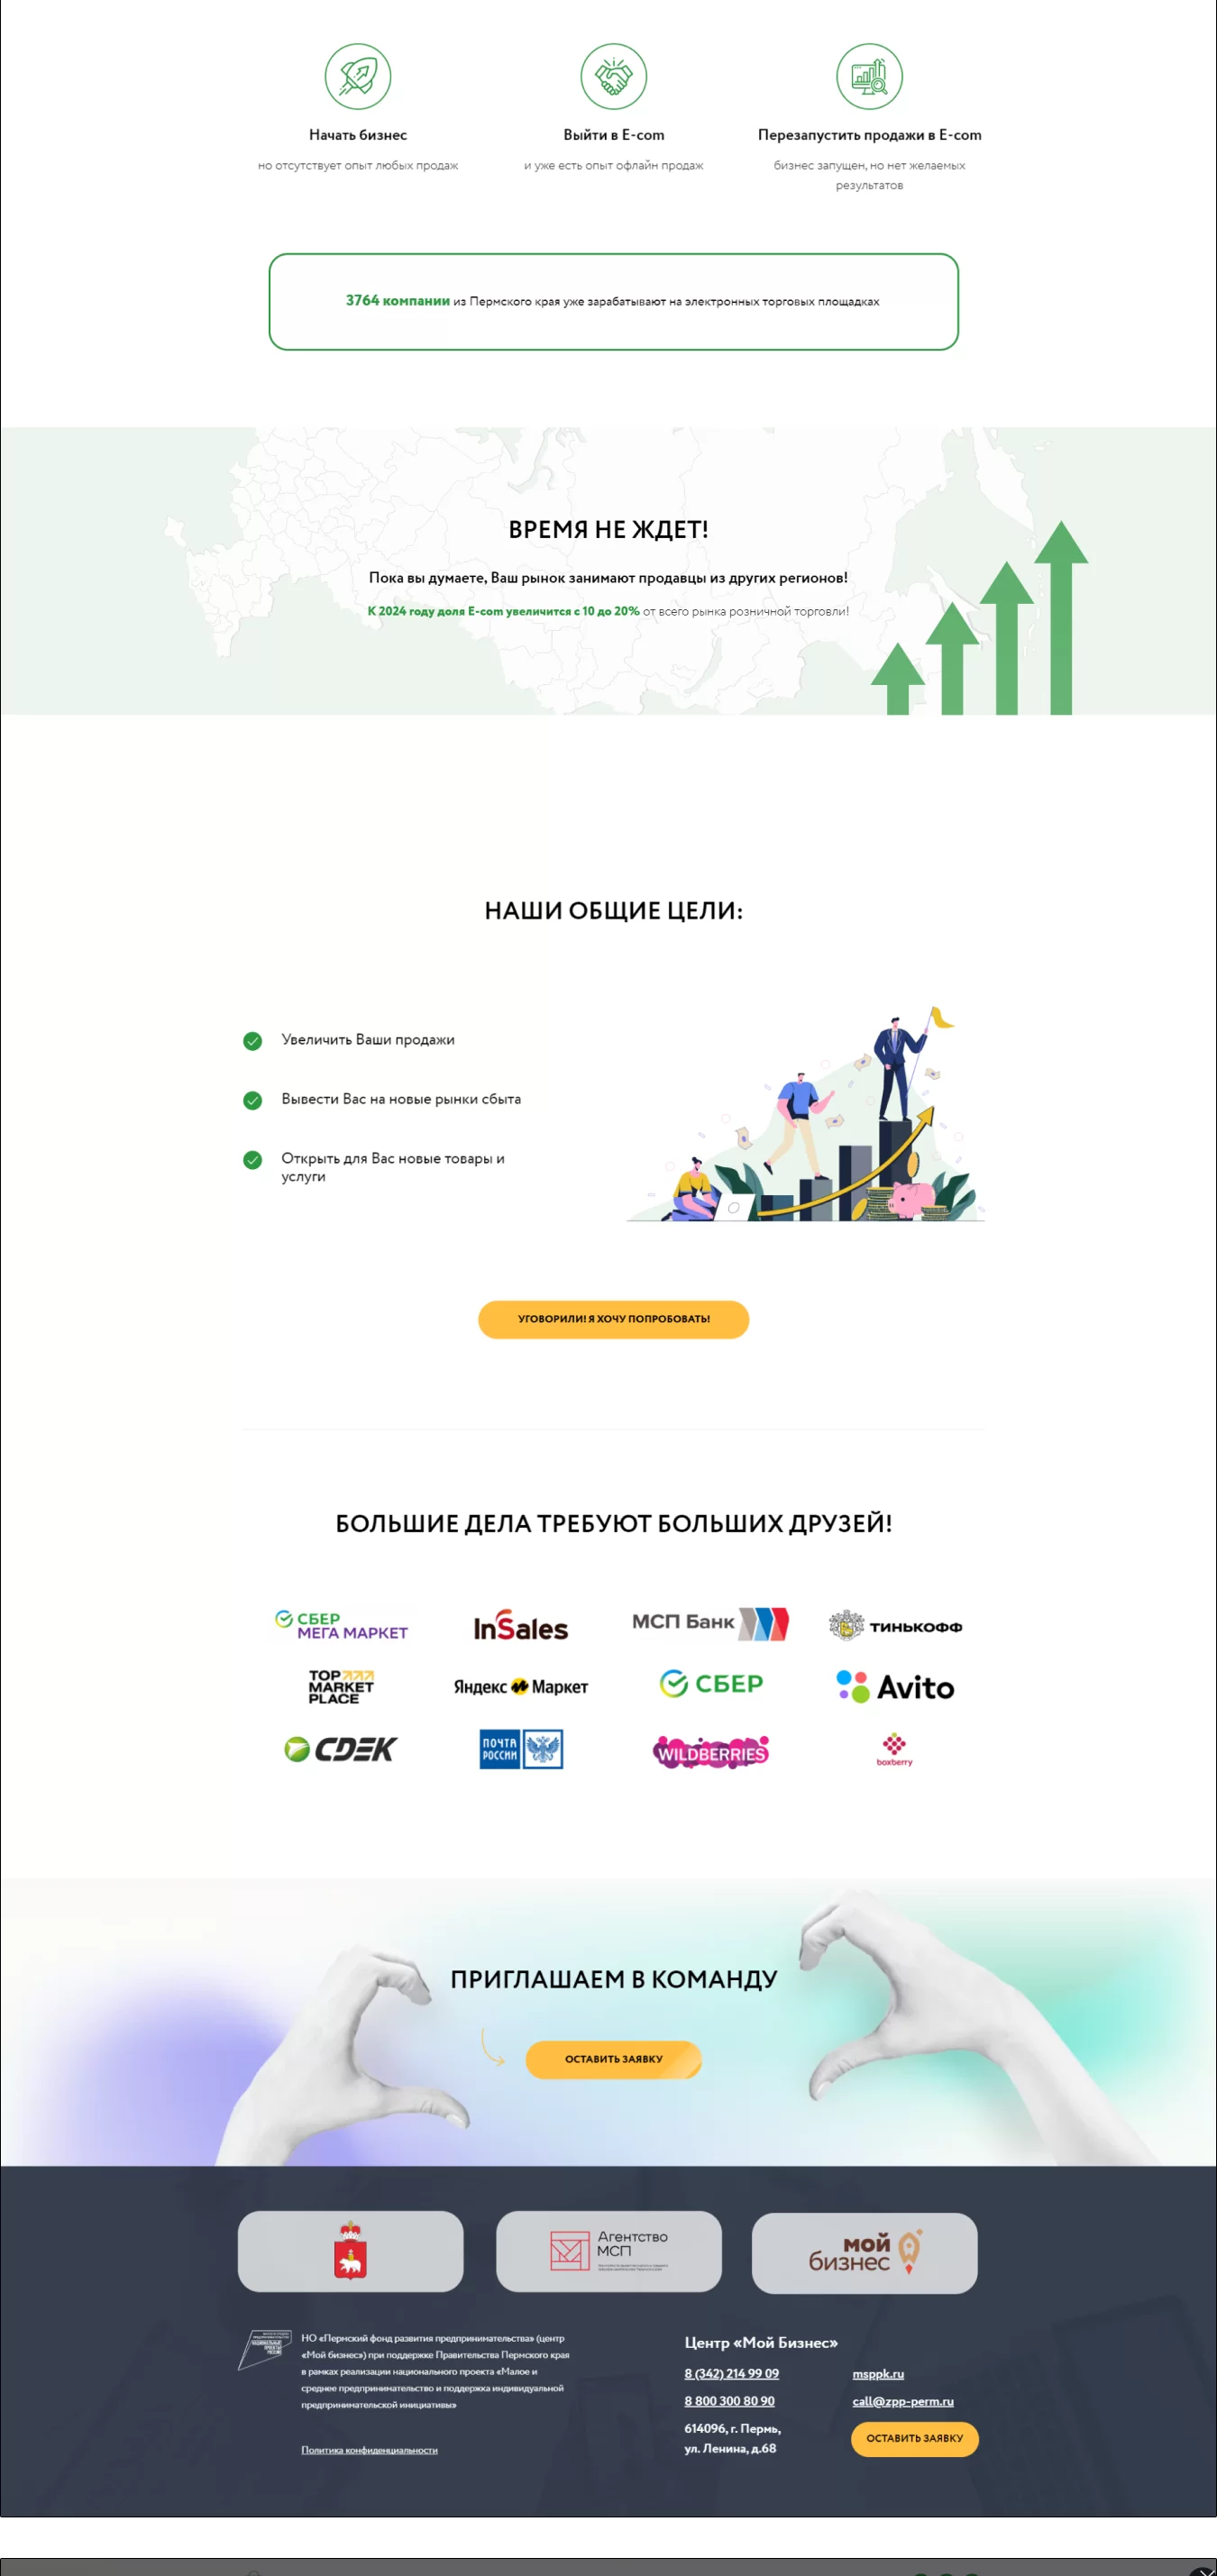 Разработка сайта на TILDA — «Центра электронной торговли» (НО «Пермский фонд развития предпринимательства»)